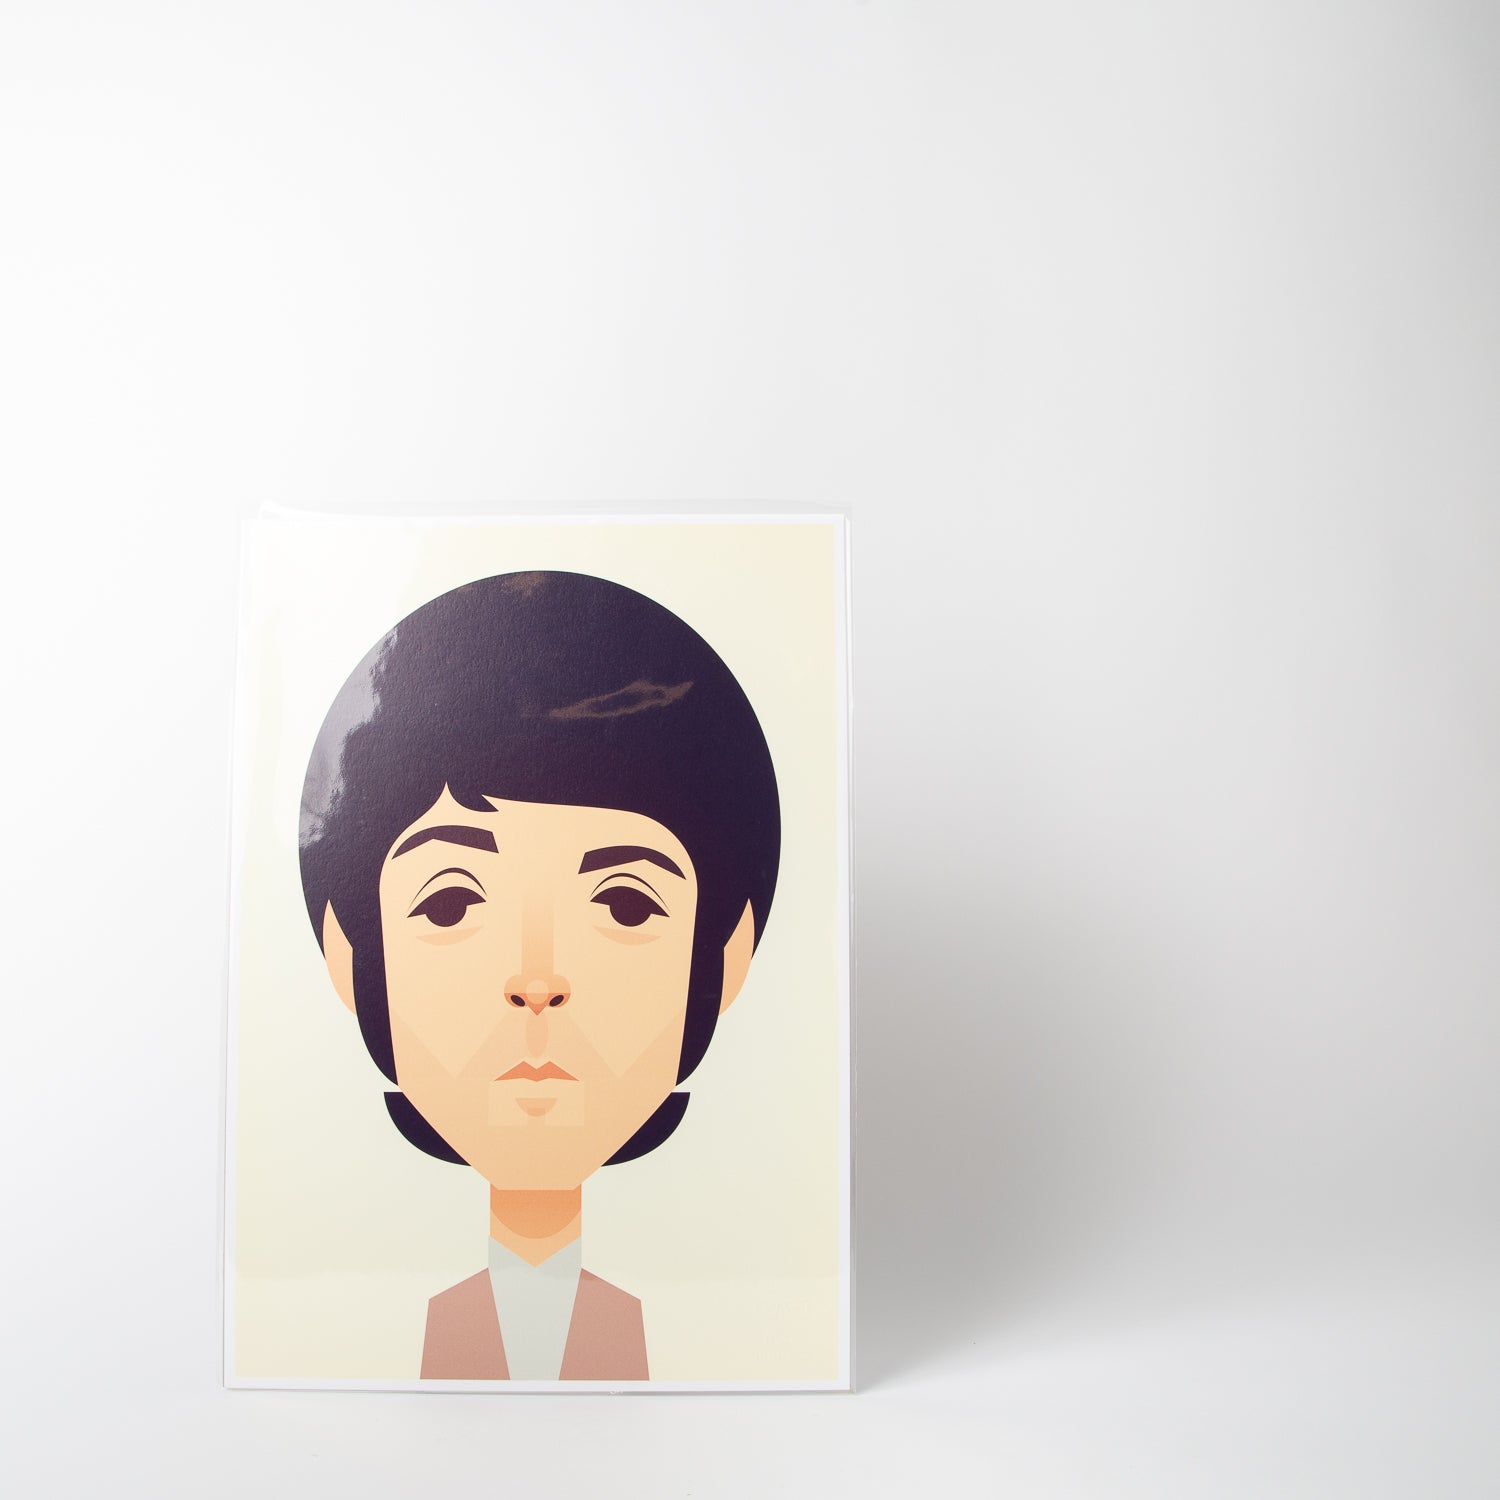 Paul McCartney portrait by Stanley Chow Print Shop at Secret Location